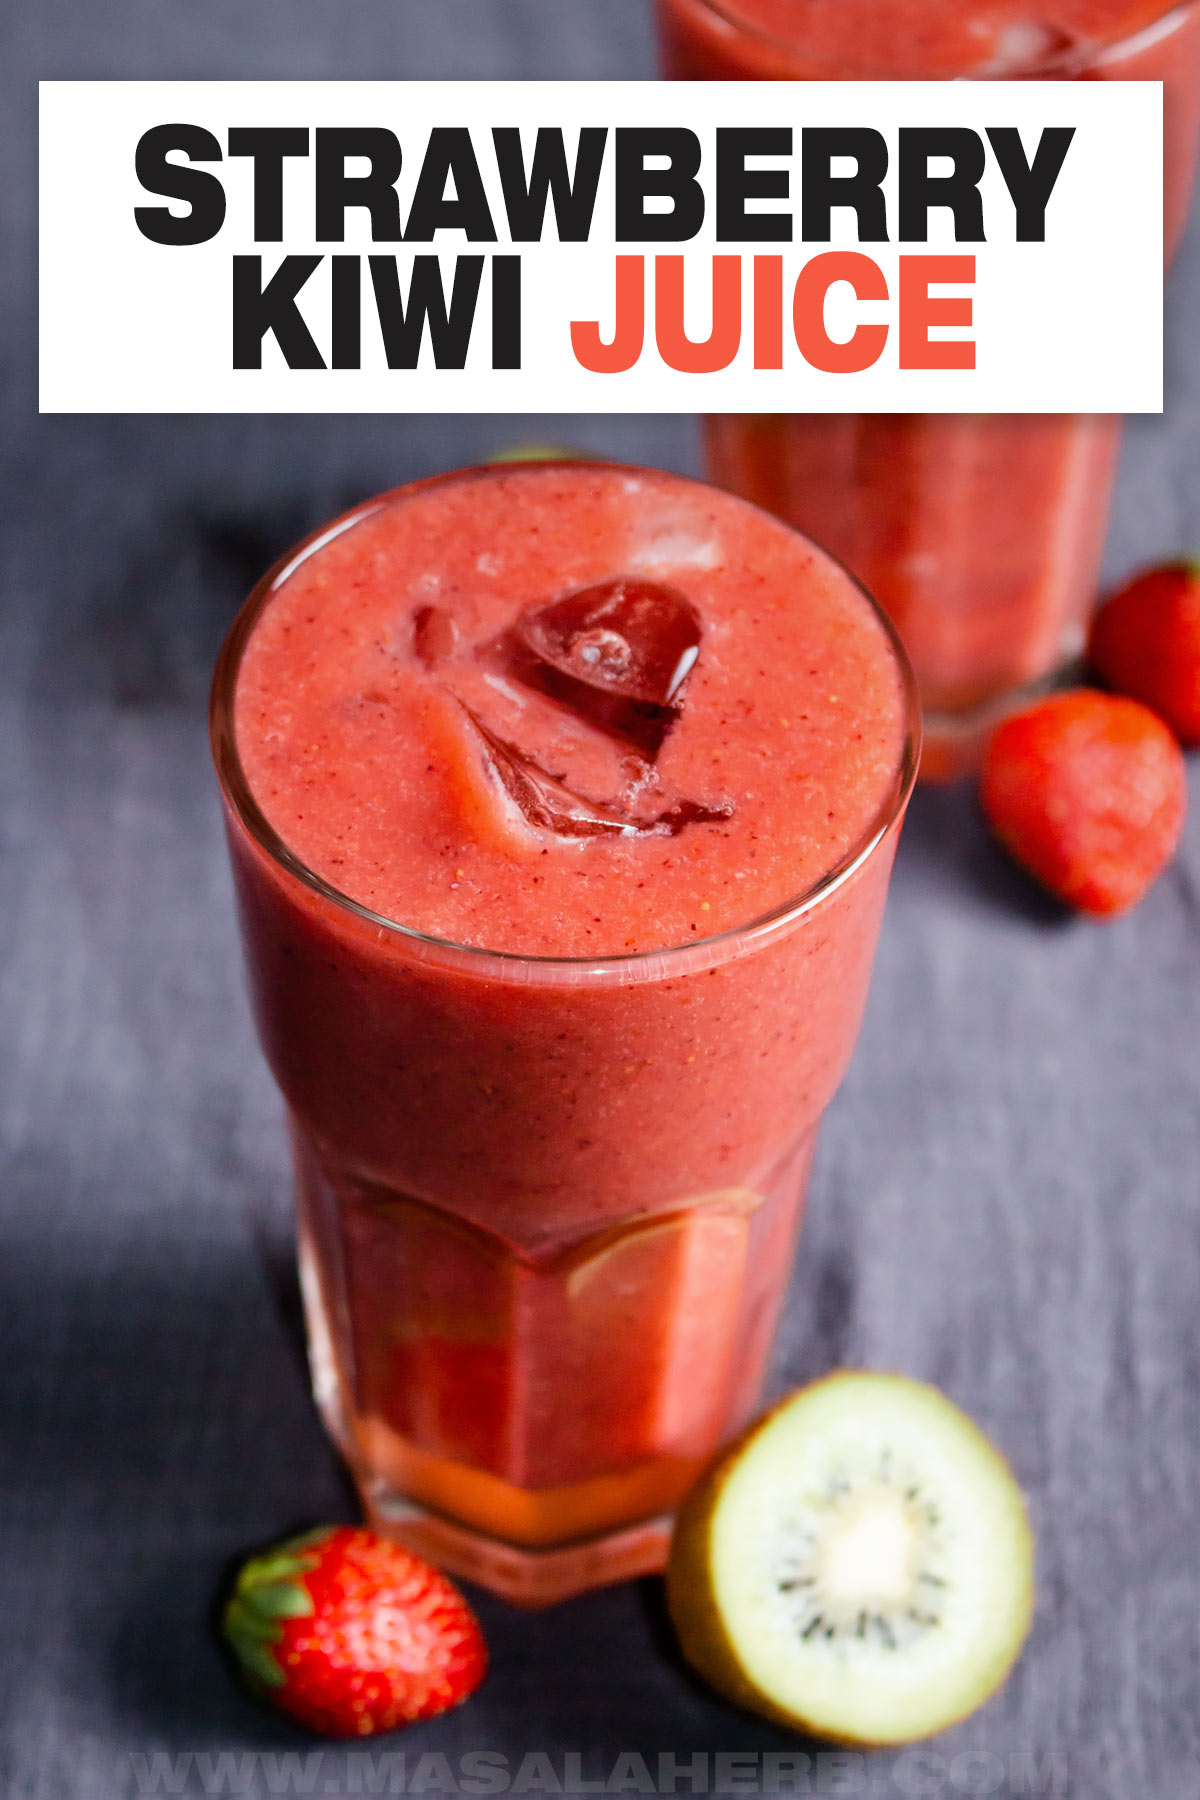 Strawberry Kiwi Juice Recipe cover image